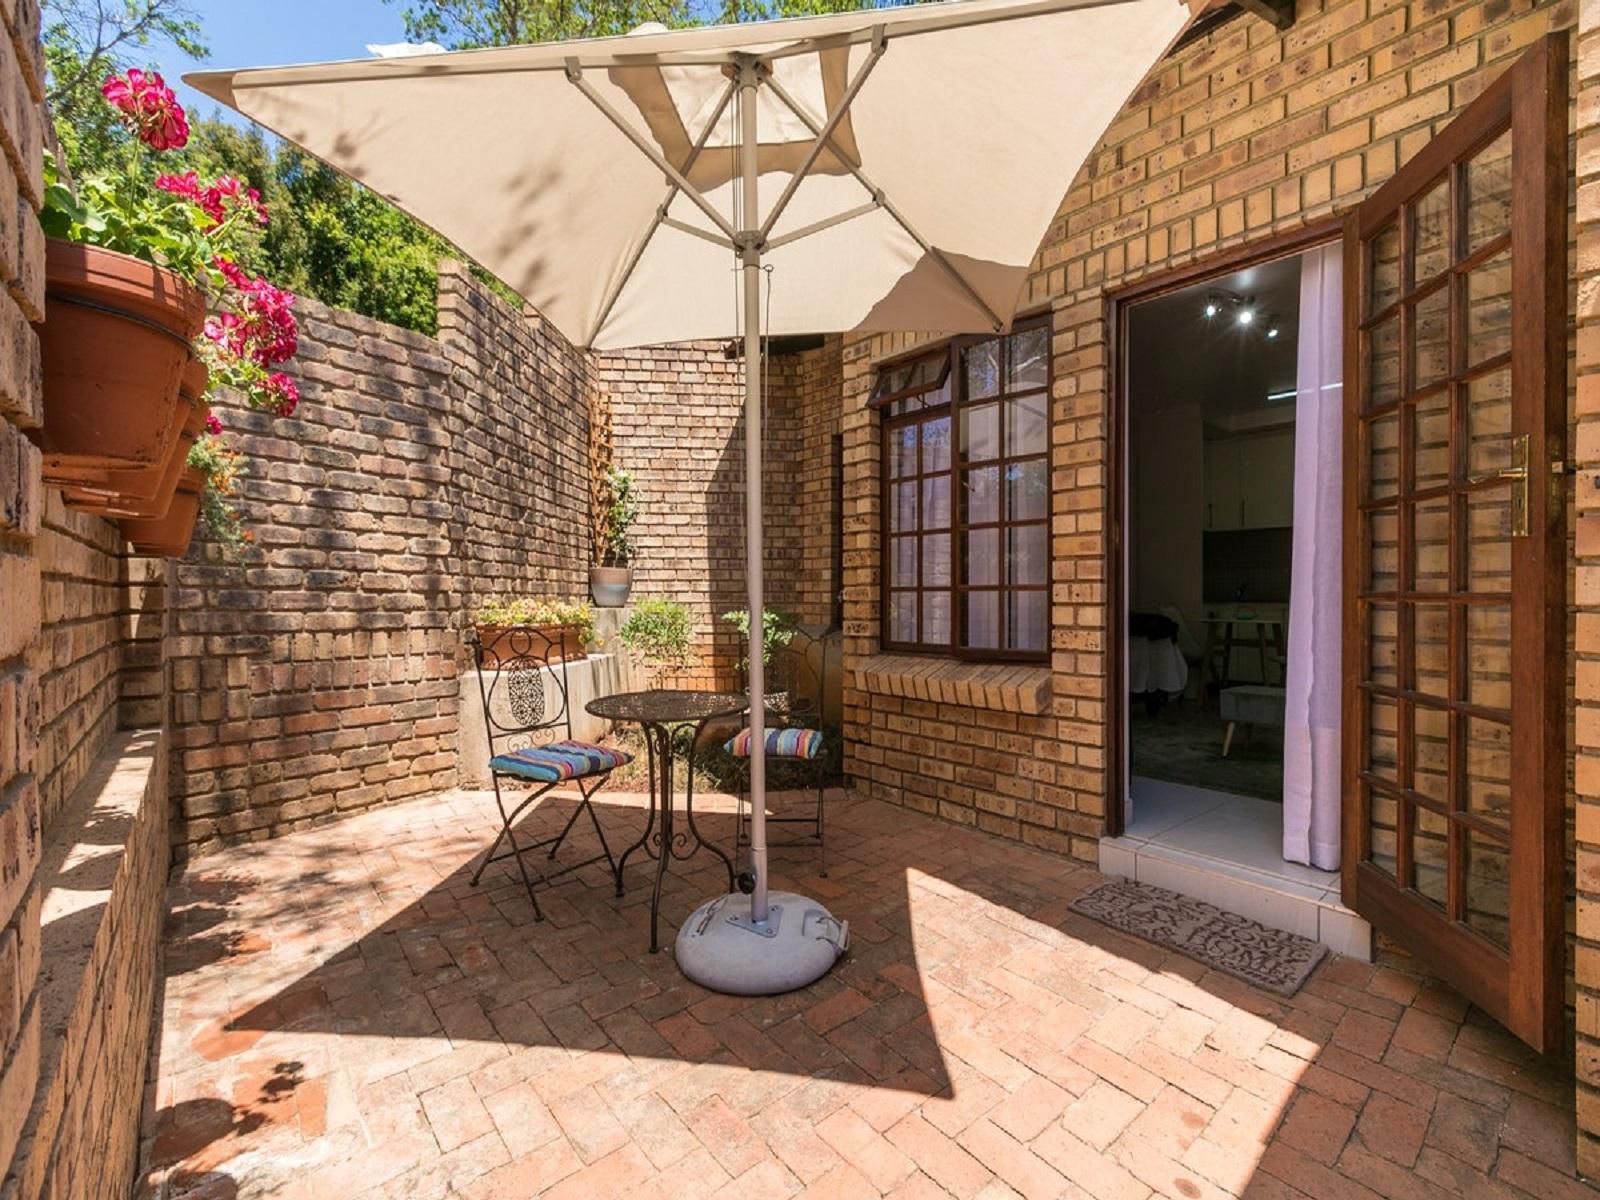 Just Home Apartment Moreleta Park Pretoria Tshwane Gauteng South Africa House, Building, Architecture, Brick Texture, Texture, Garden, Nature, Plant